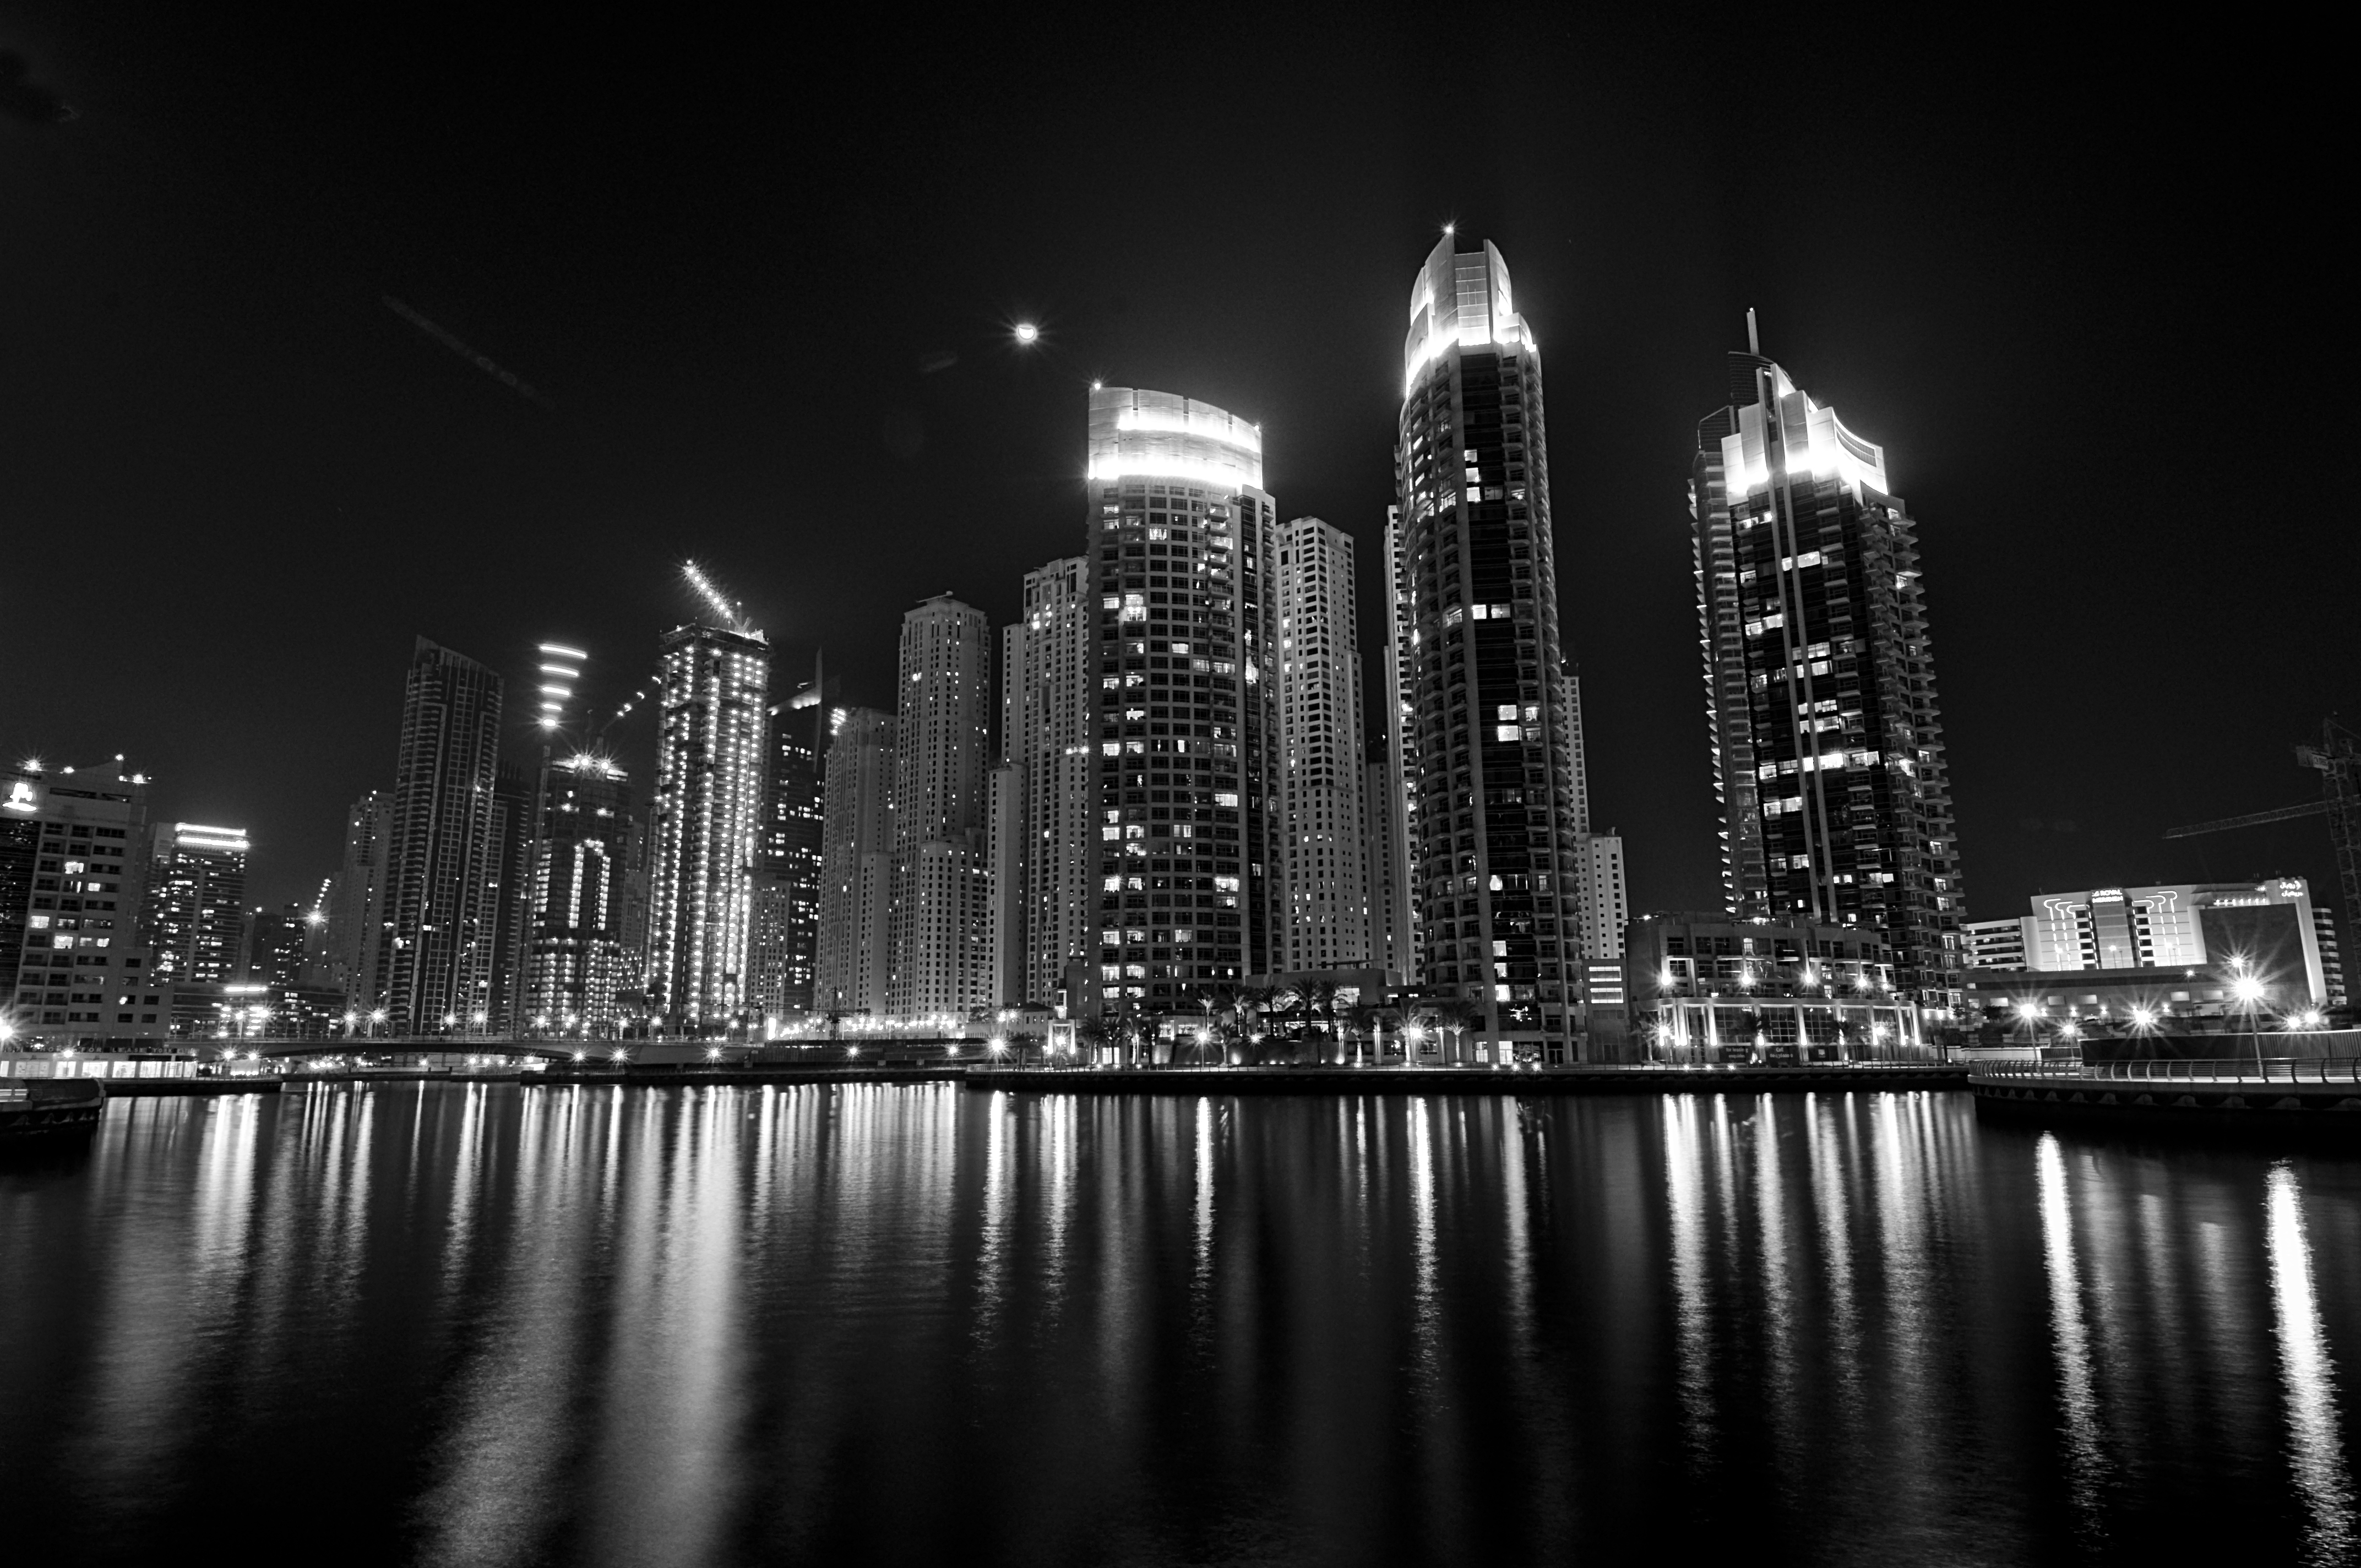 Dubai Marina B/W by CSamiano on DeviantArt